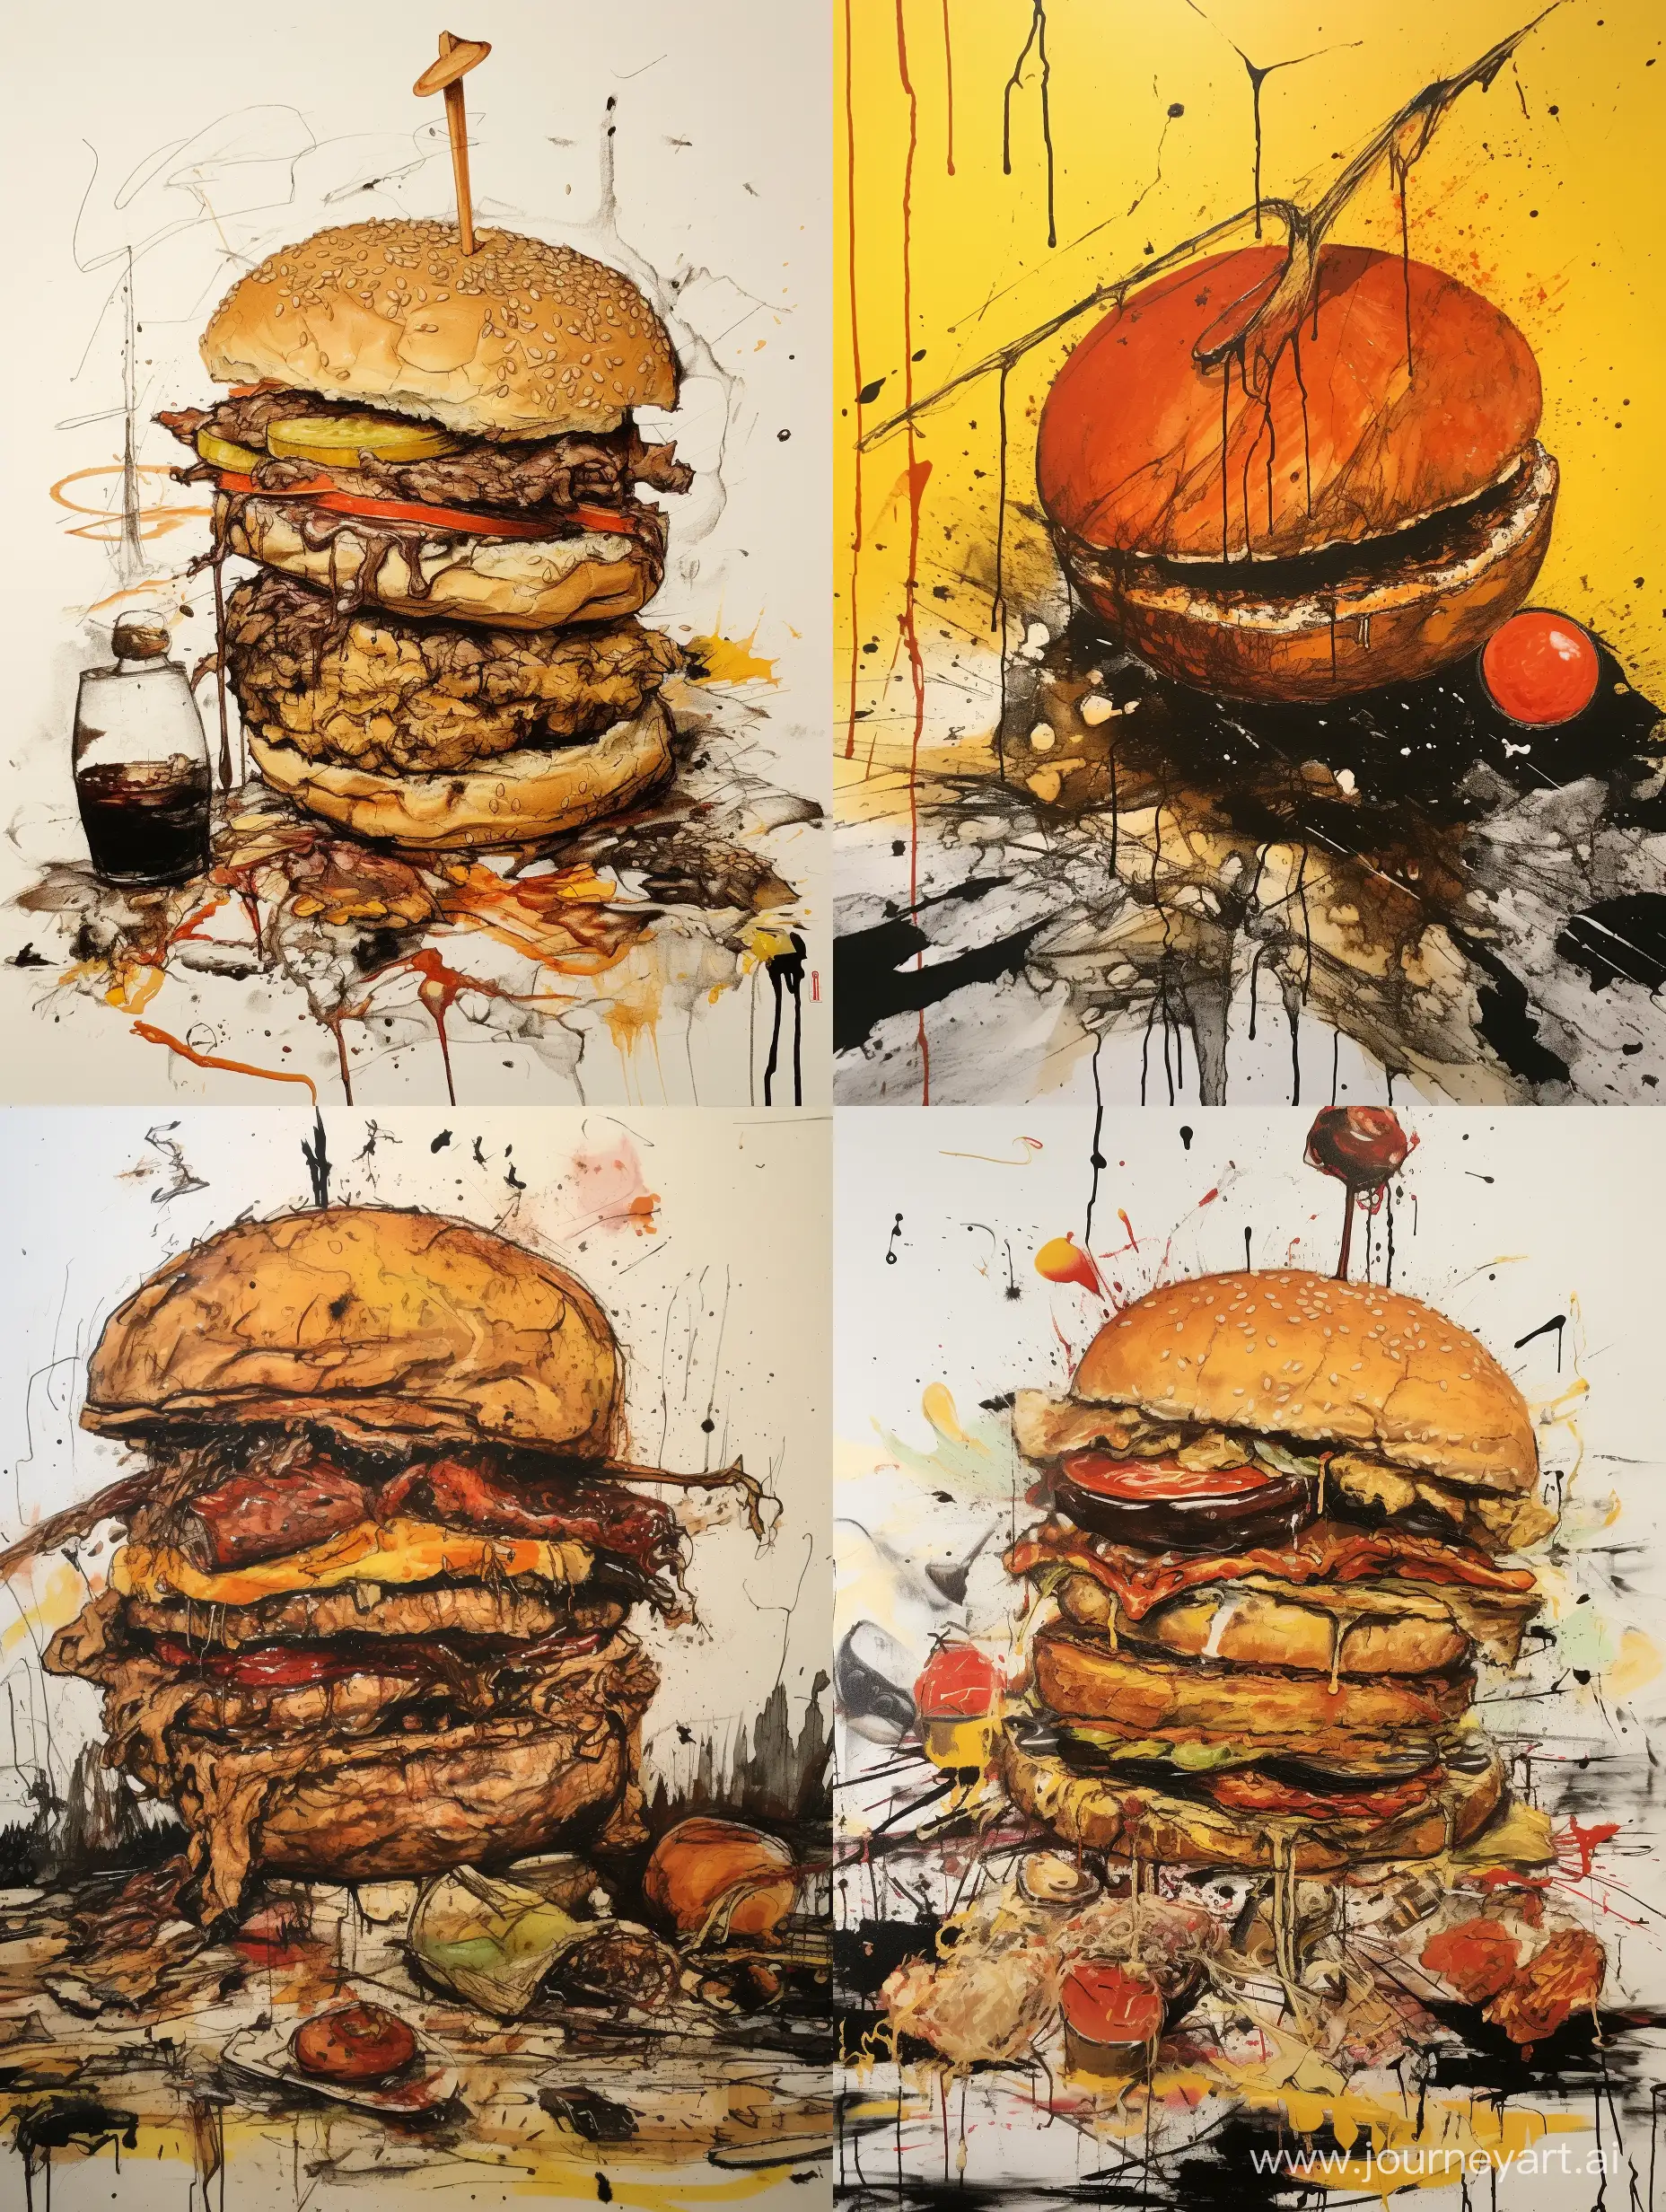 Eclectic-Chaos-Ralph-SteadmanInspired-HalfEaten-Burger-Sketch